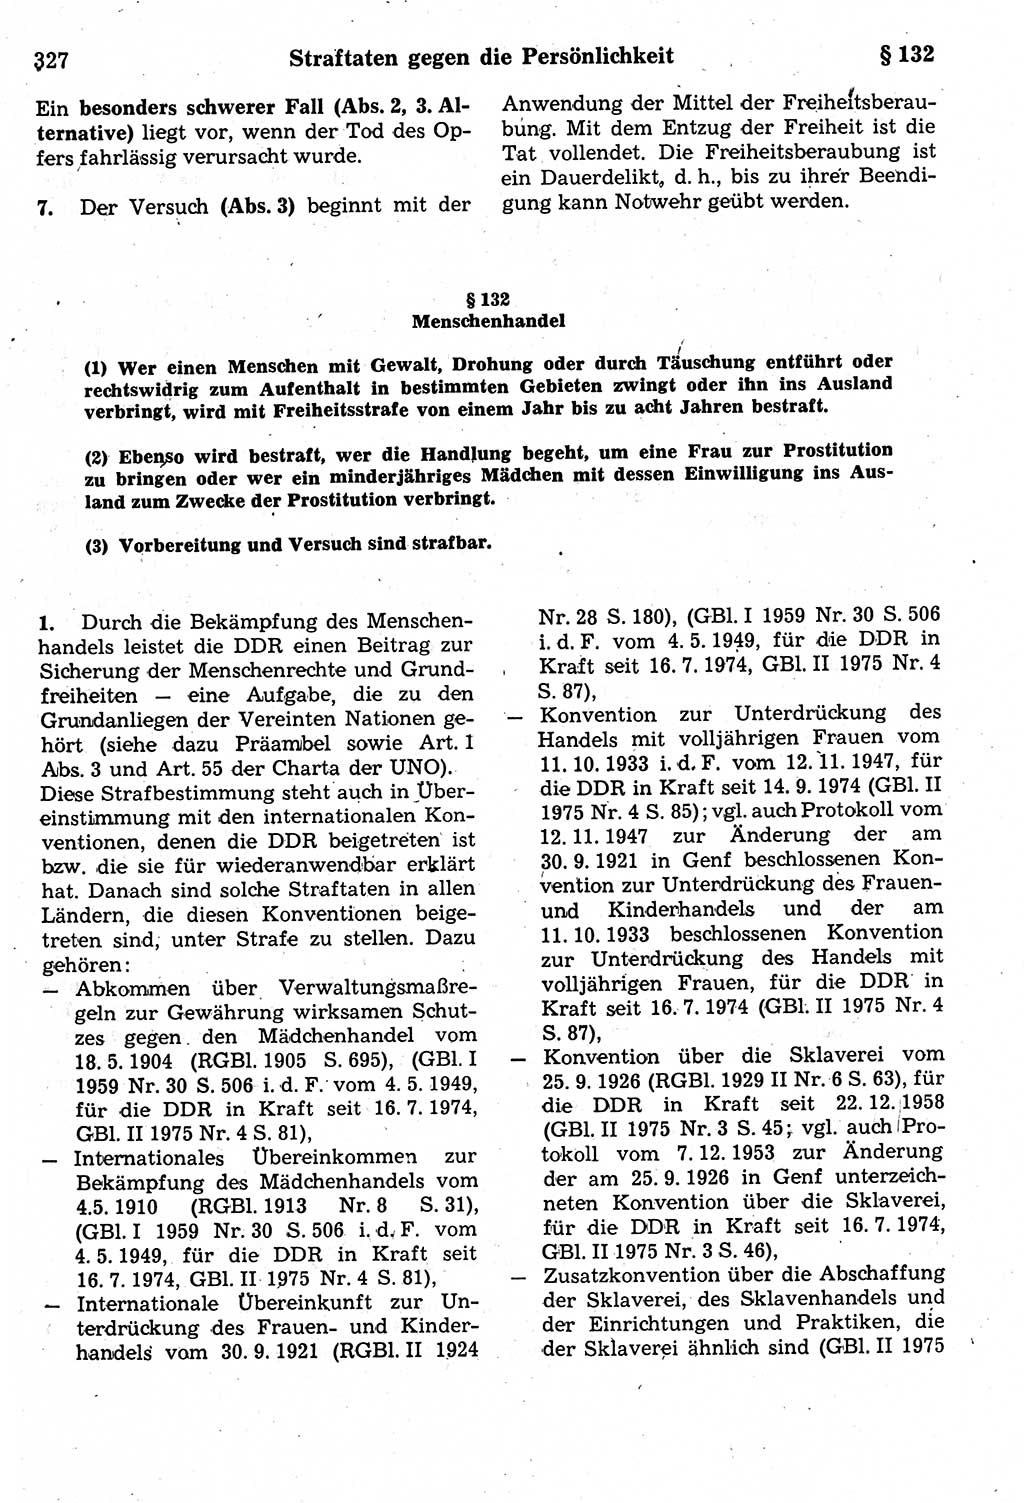 Strafrecht der Deutschen Demokratischen Republik (DDR), Kommentar zum Strafgesetzbuch (StGB) 1987, Seite 327 (Strafr. DDR Komm. StGB 1987, S. 327)